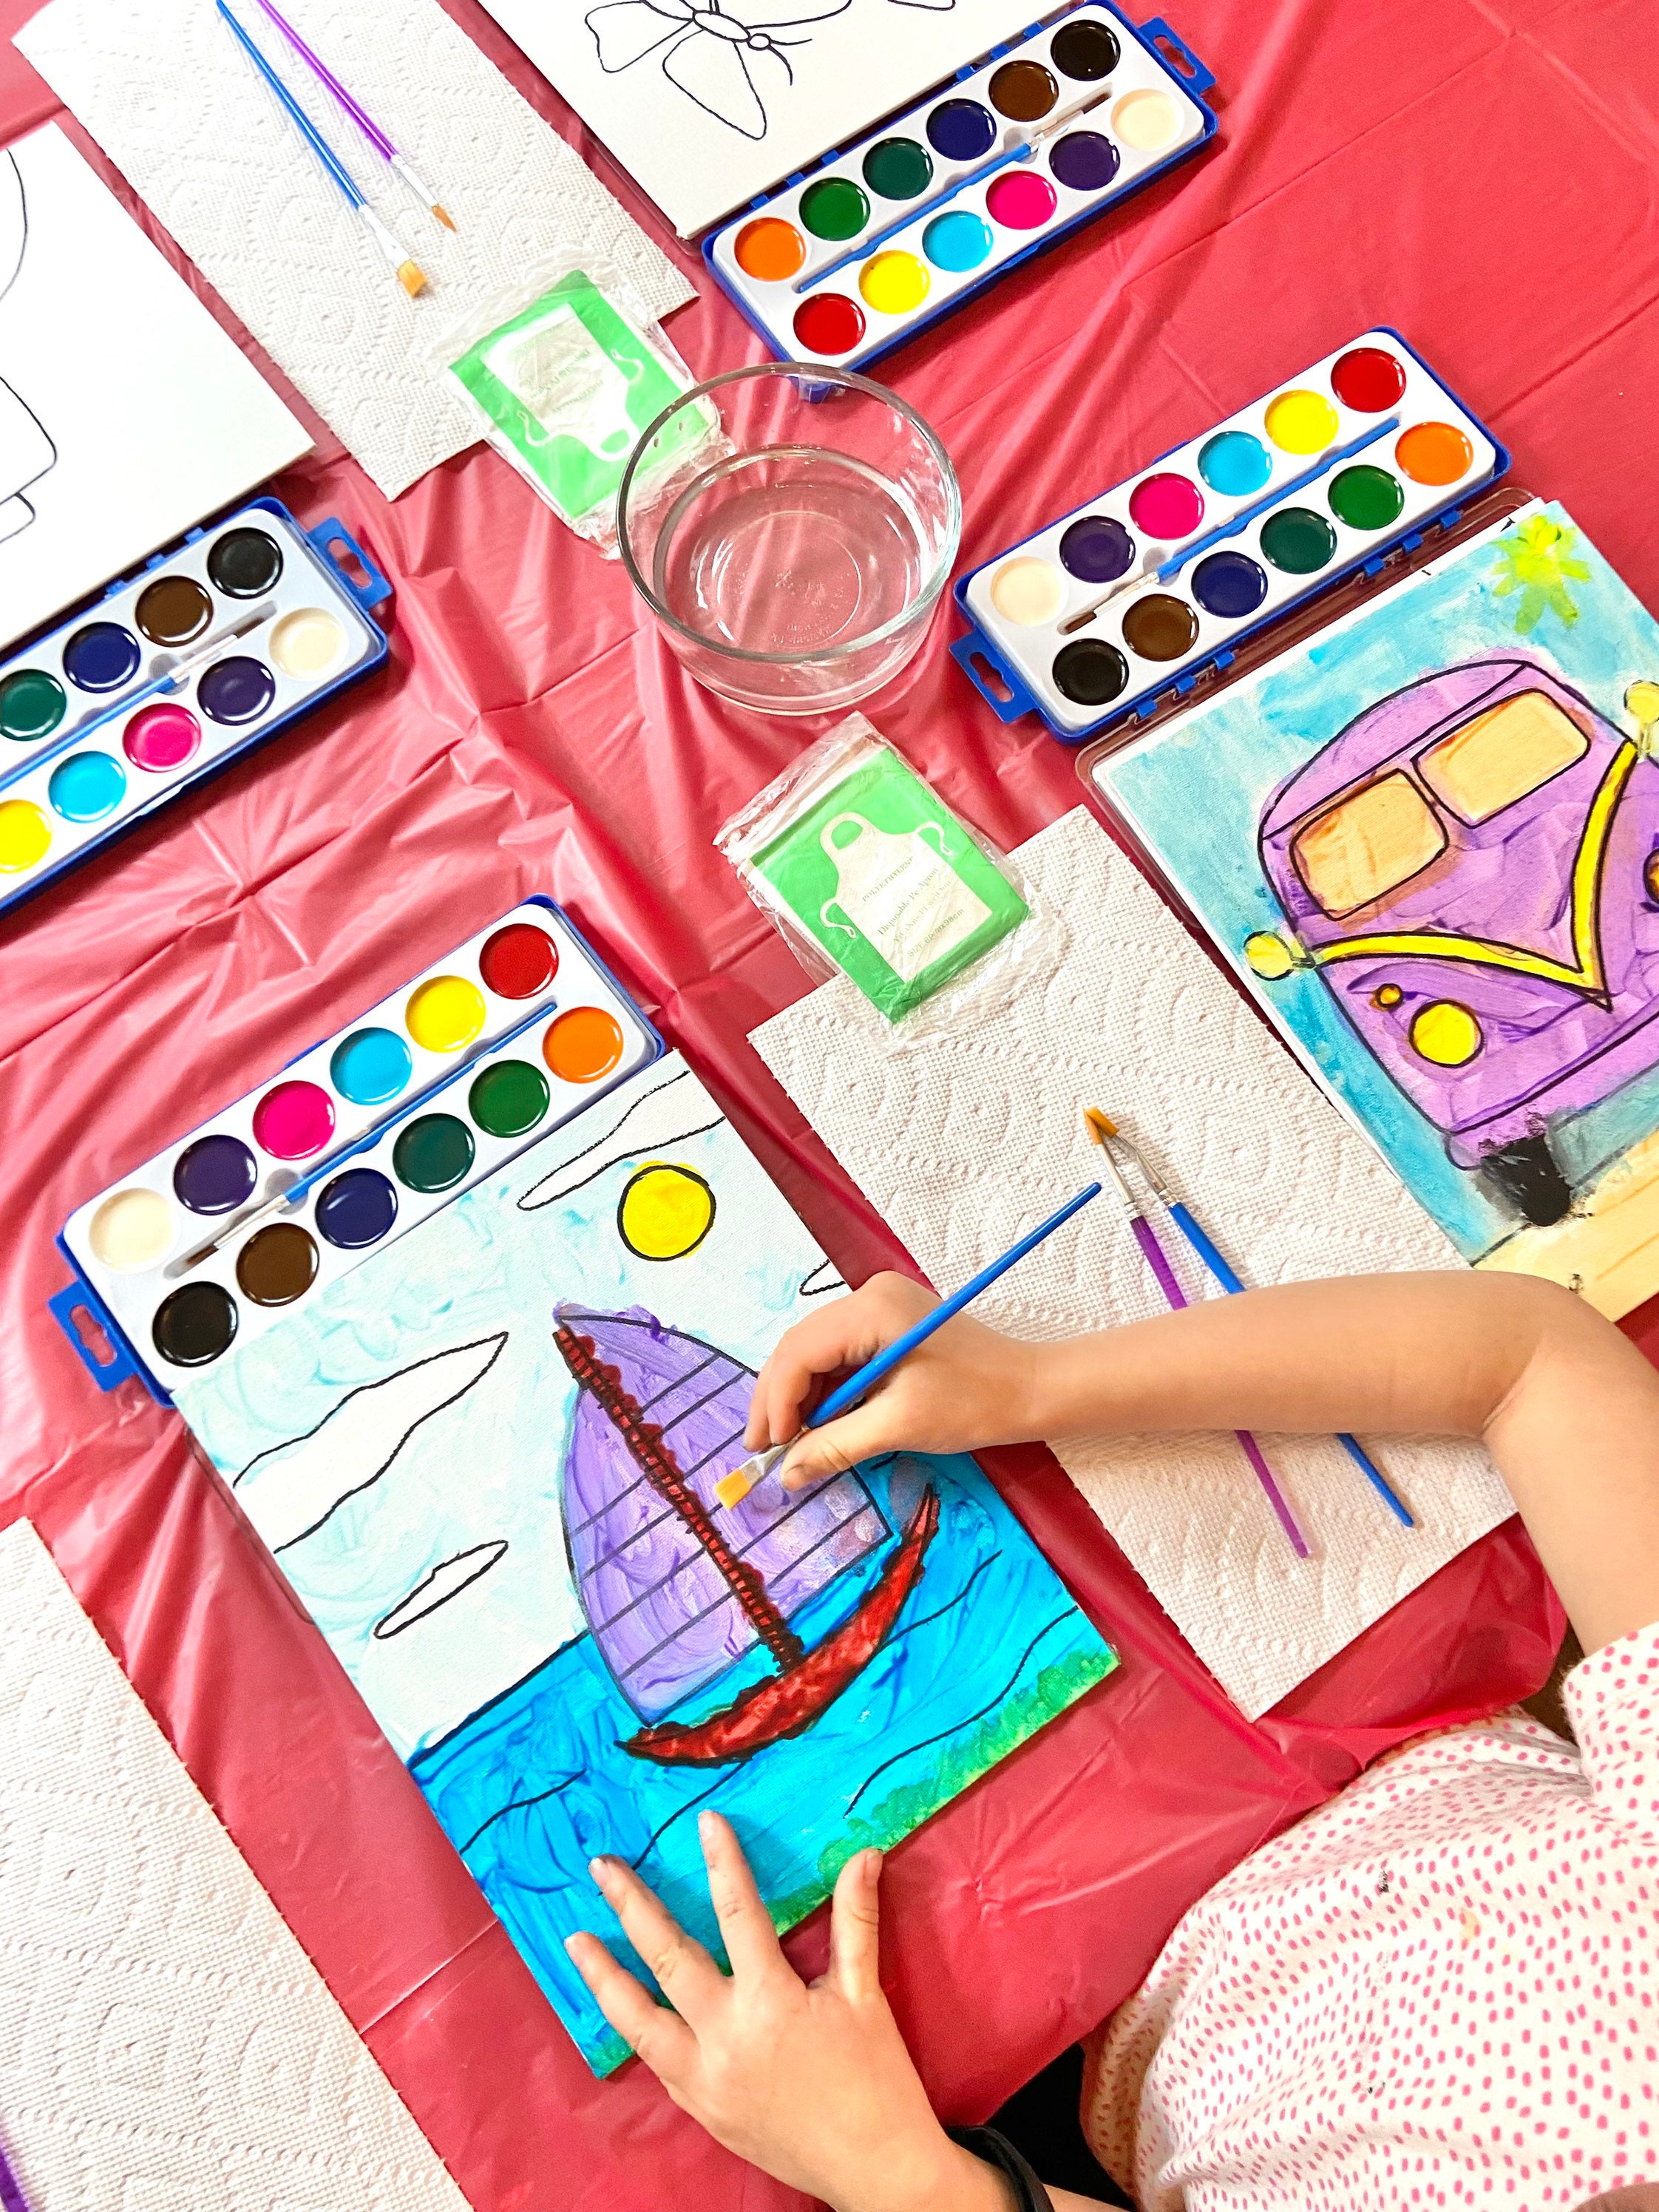 Kit de fiesta de pintura para niños Incluye Todo Actividad de fiesta de  cumpleaños, niñas exploradoras, Diversión de pintura pintura de la lona -   España